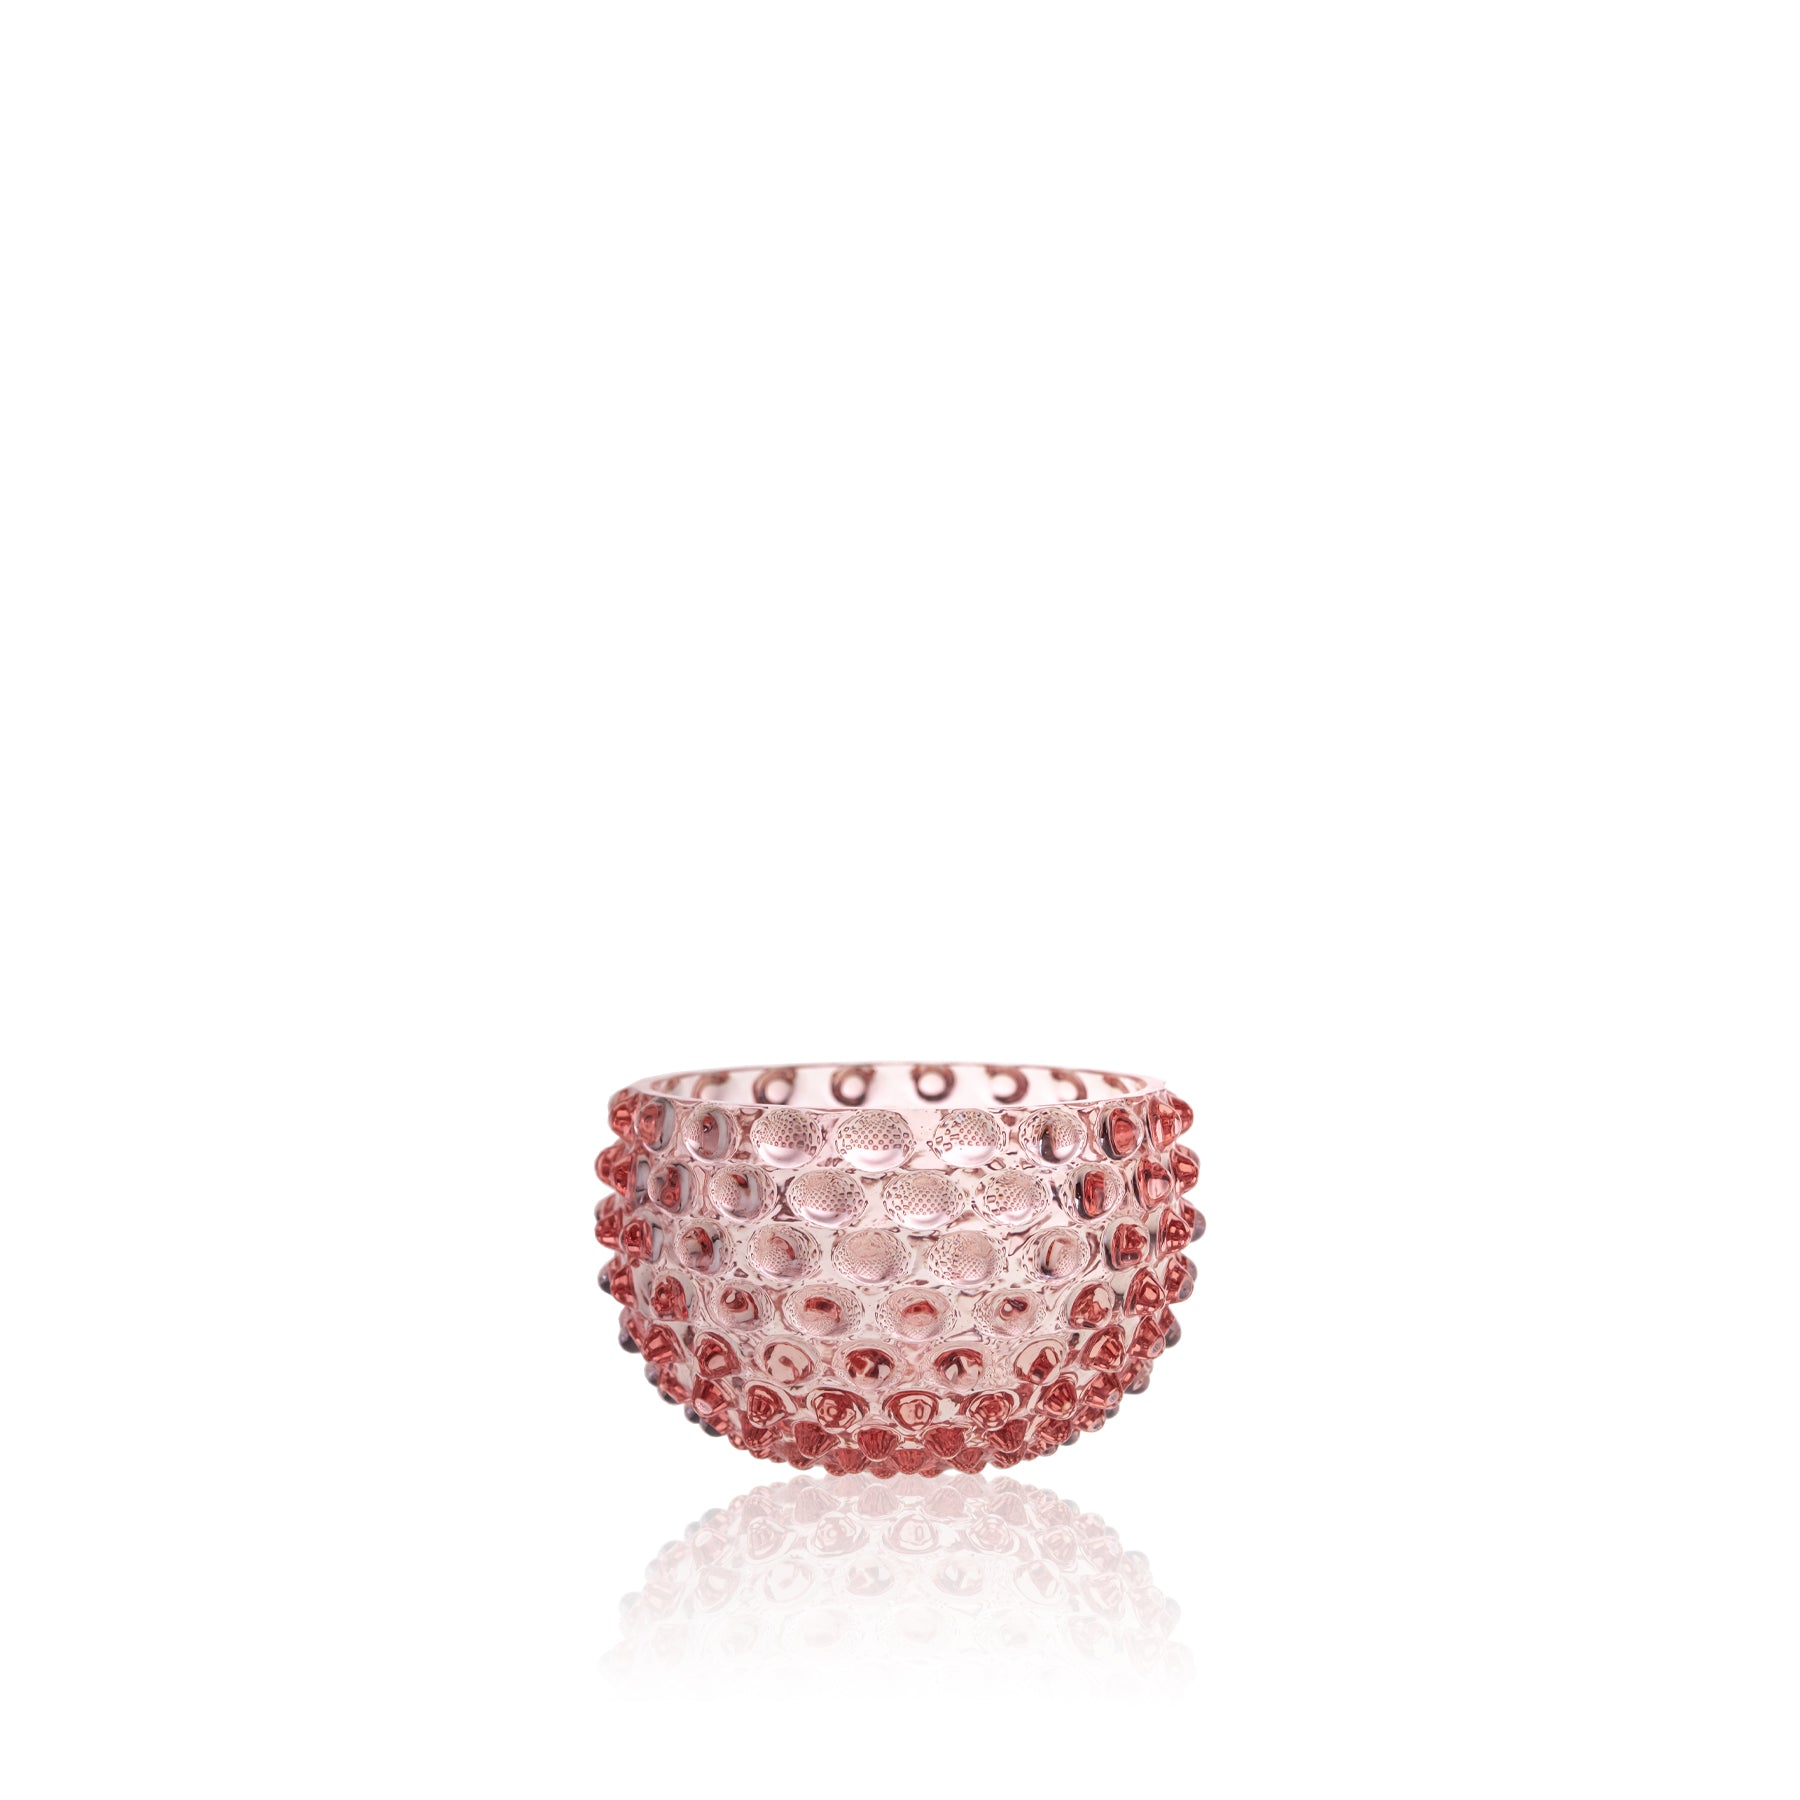 Small pink hobnail bowl